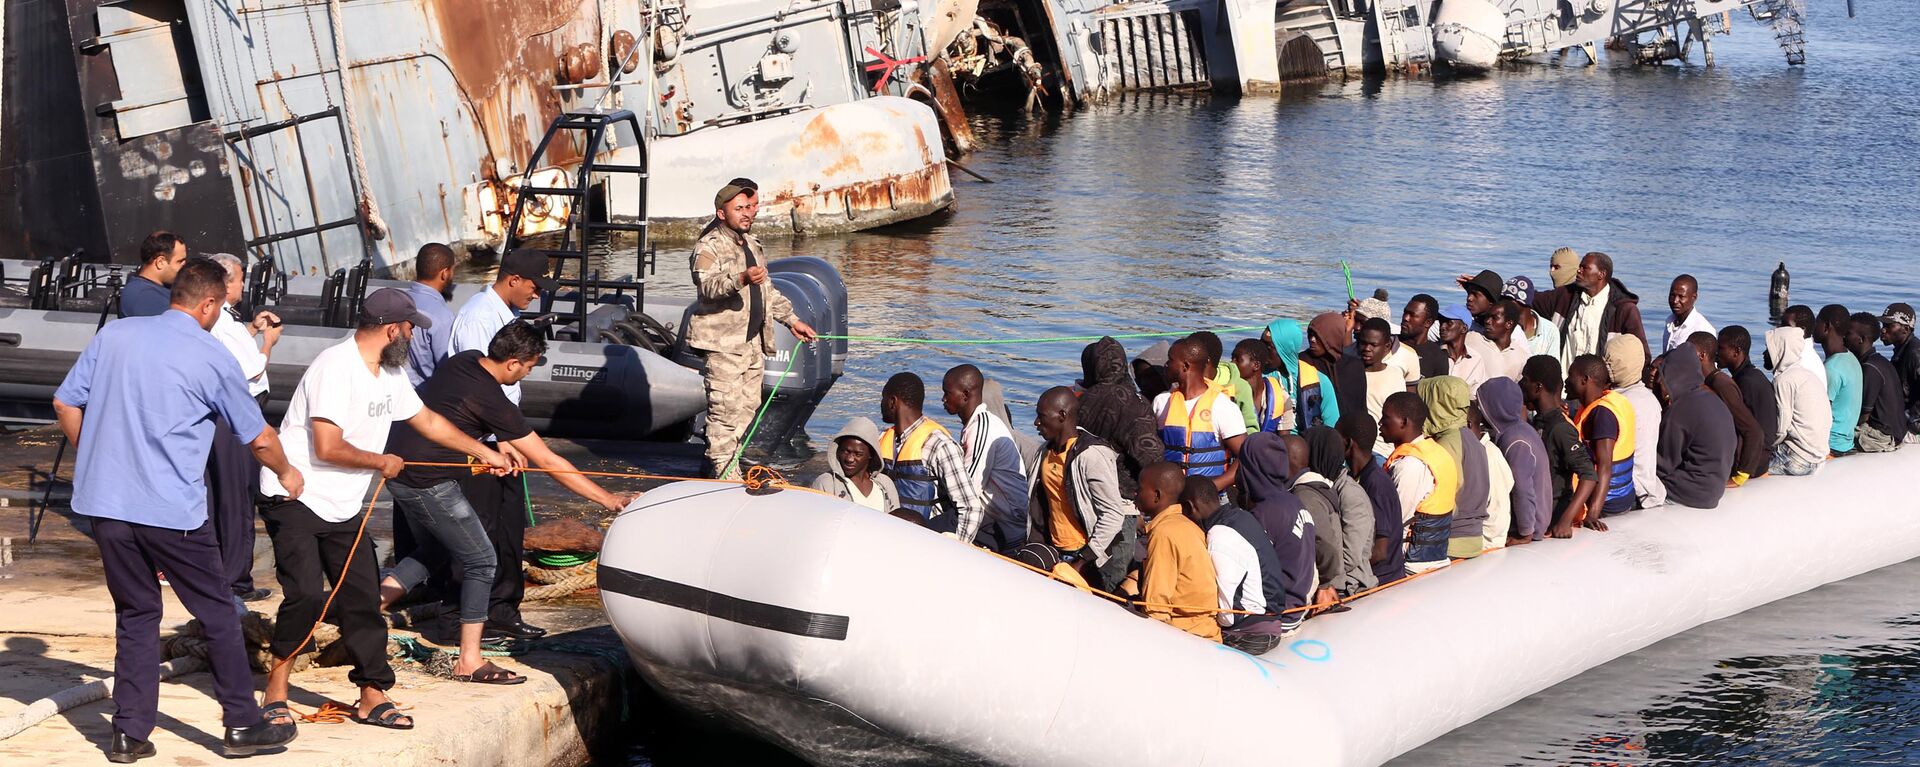  خفر السواحل الليبي يقوم بسحب قارب يحمل مهاجرين أفارقة، تم إنقاذهم أثناء محاولتهم الوصول إلى أوروبا بطريقة غير شرعية، في قاعدة بحرية بالقرب من العاصمة طرابلس في 29 سبتمبر/ أيلول 2015. - سبوتنيك عربي, 1920, 09.05.2021